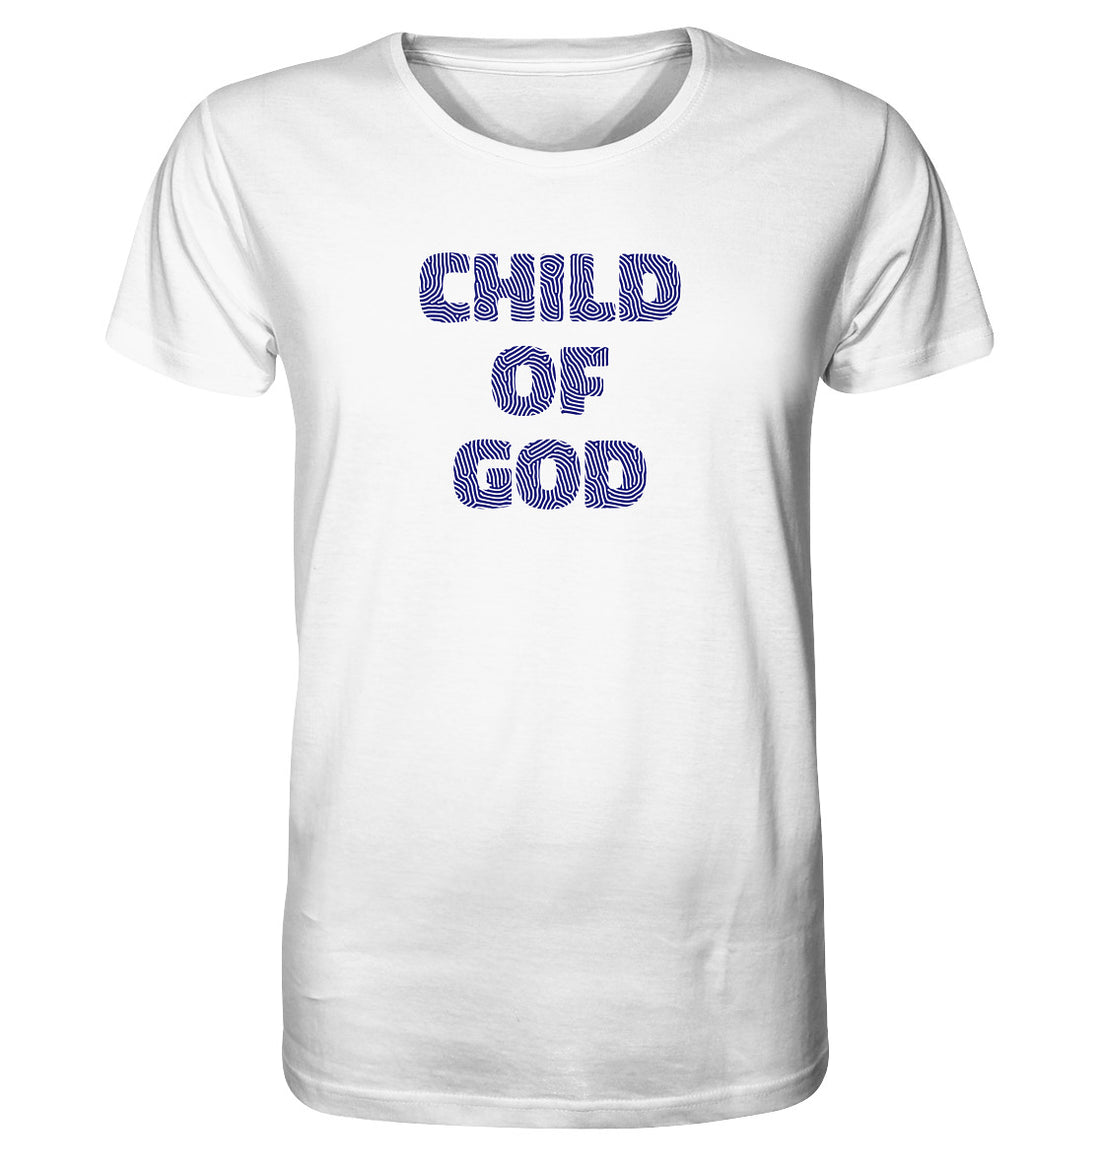 Joh 1,12 - Child of God - Fingerprint dunkelblau - Organic Shirt